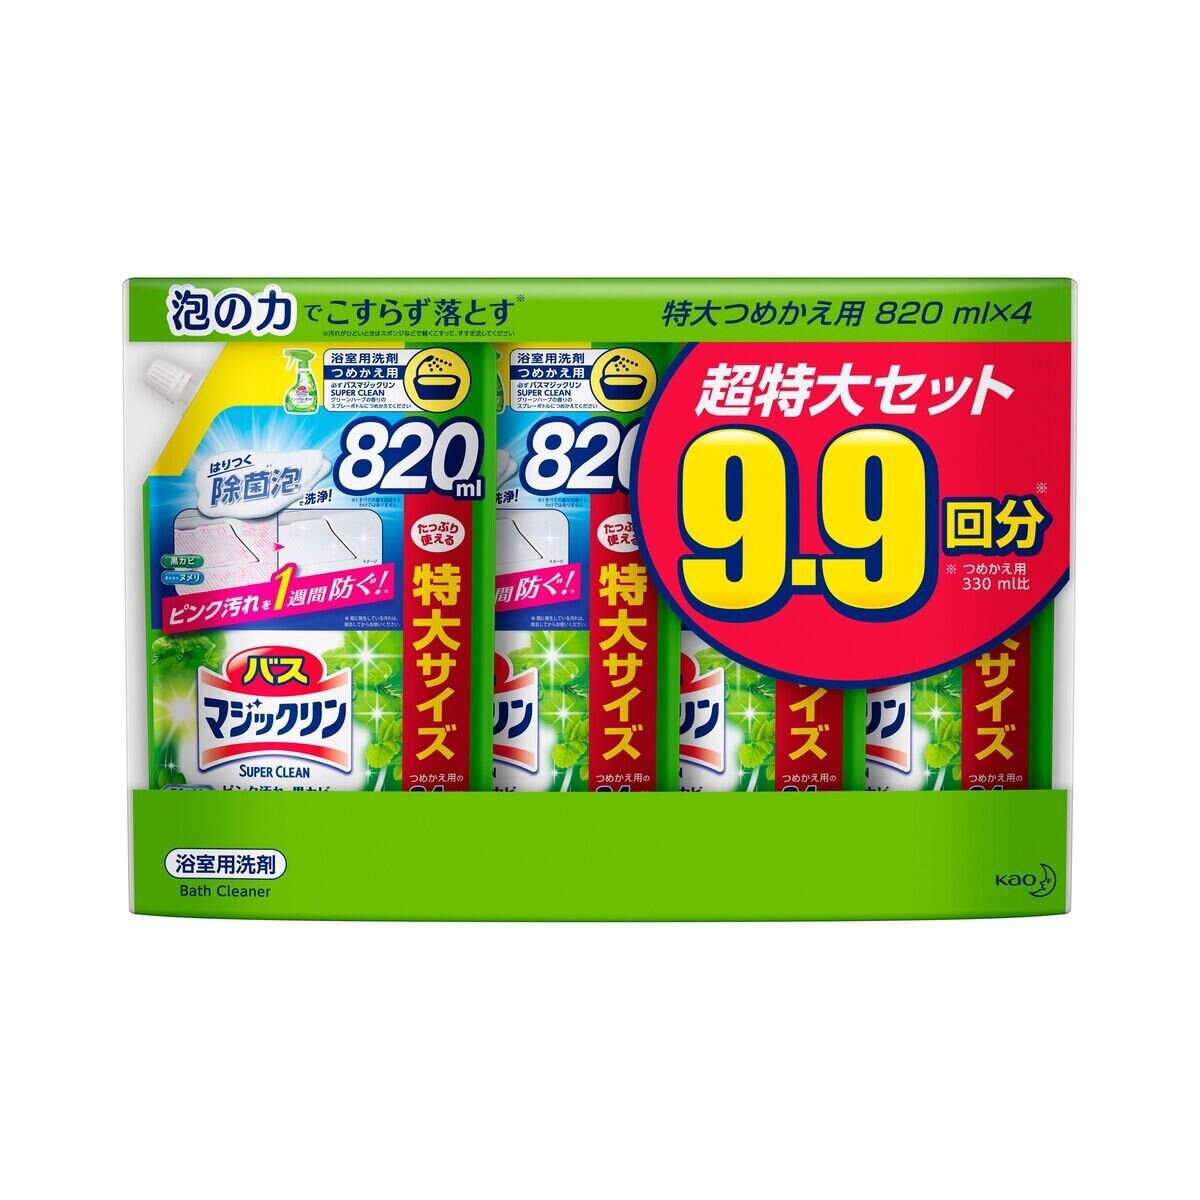 バスマジックリン SUPER CLEAN グリーンハーブ 詰替 820ml x 4パック | Costco Japan